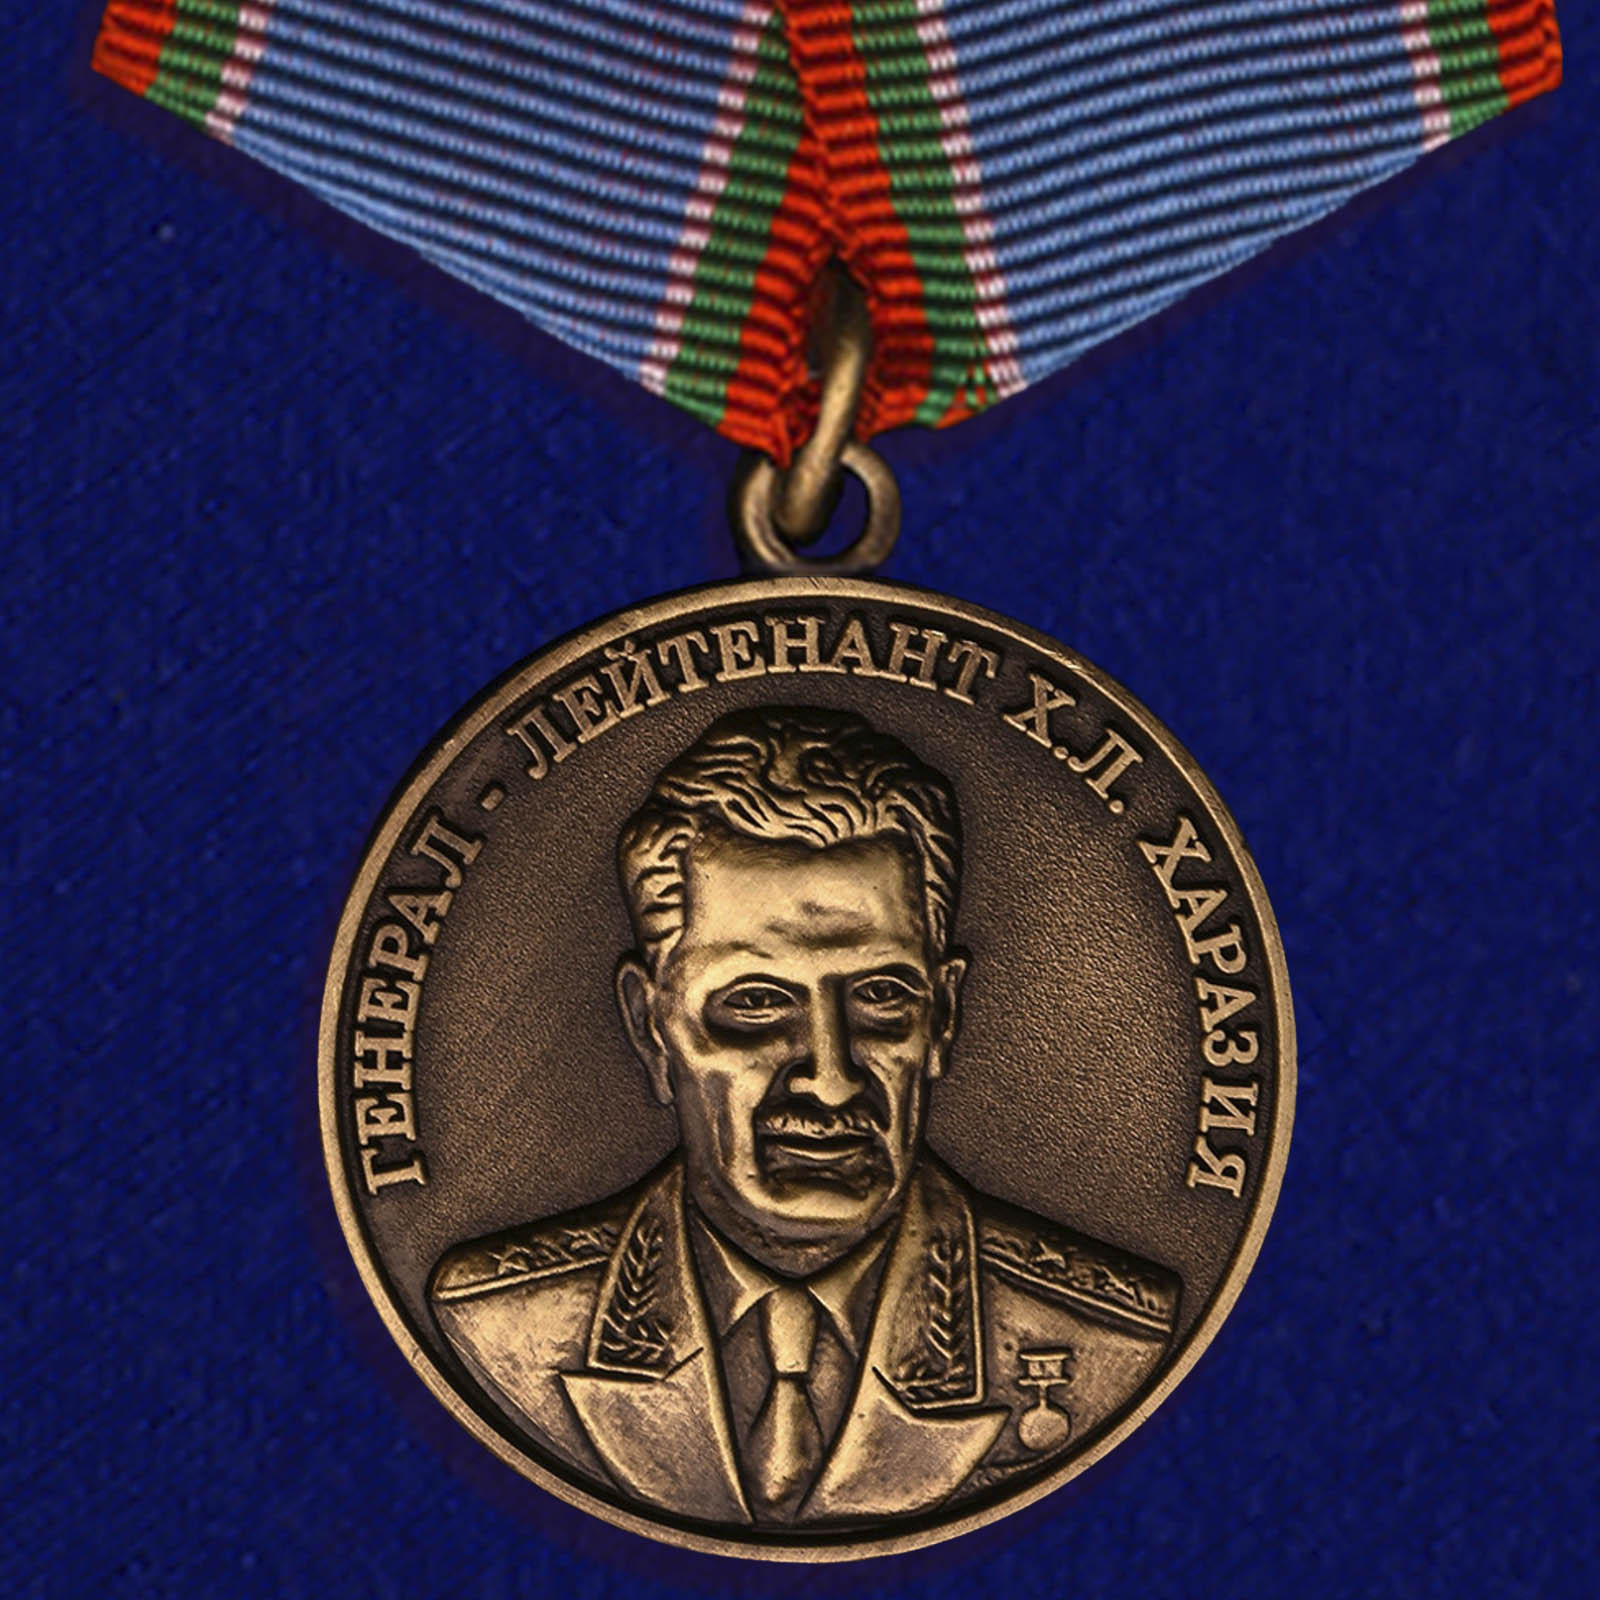 Купить медаль Генерал Харазия на подставке в подарок